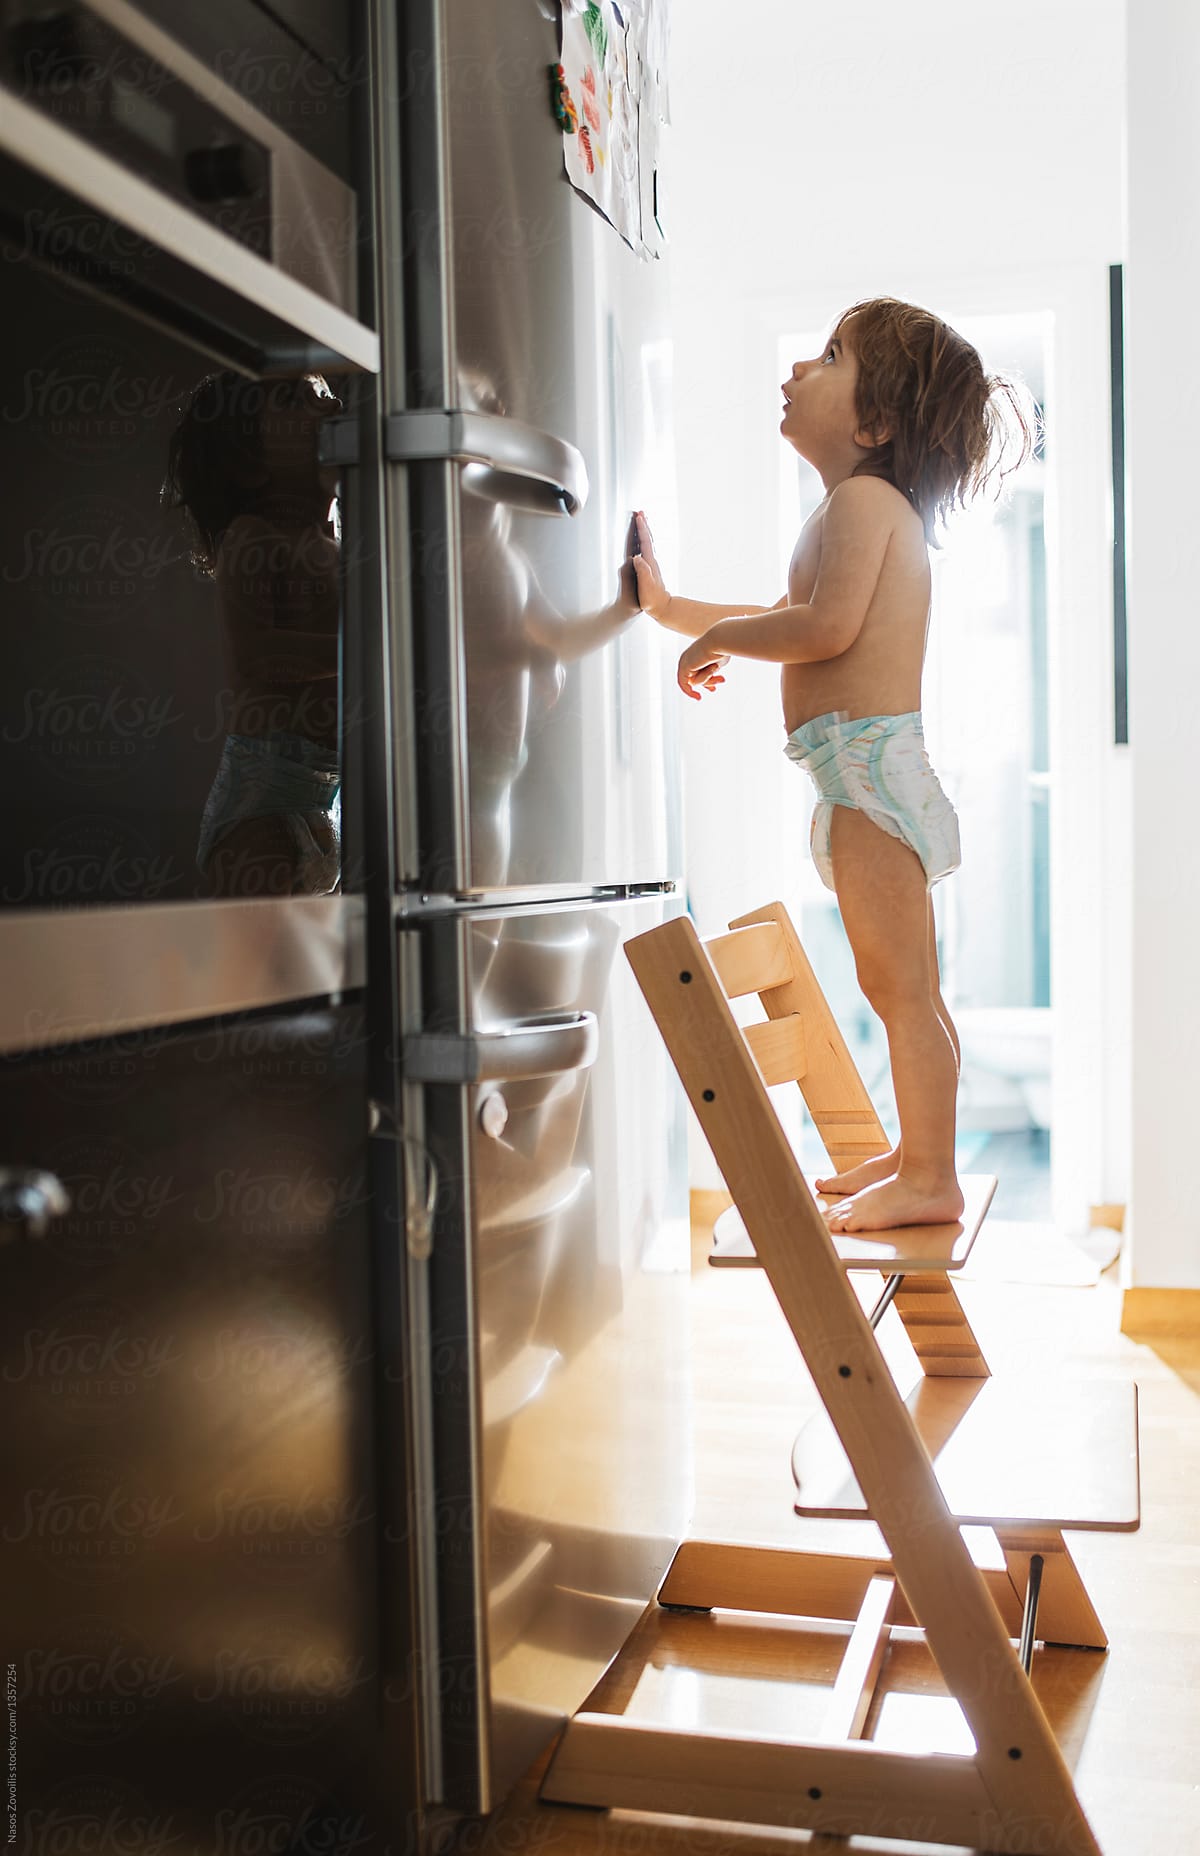 2-year-old-boy-in-front-of-a-refrigerator-del-colaborador-de-stocksy